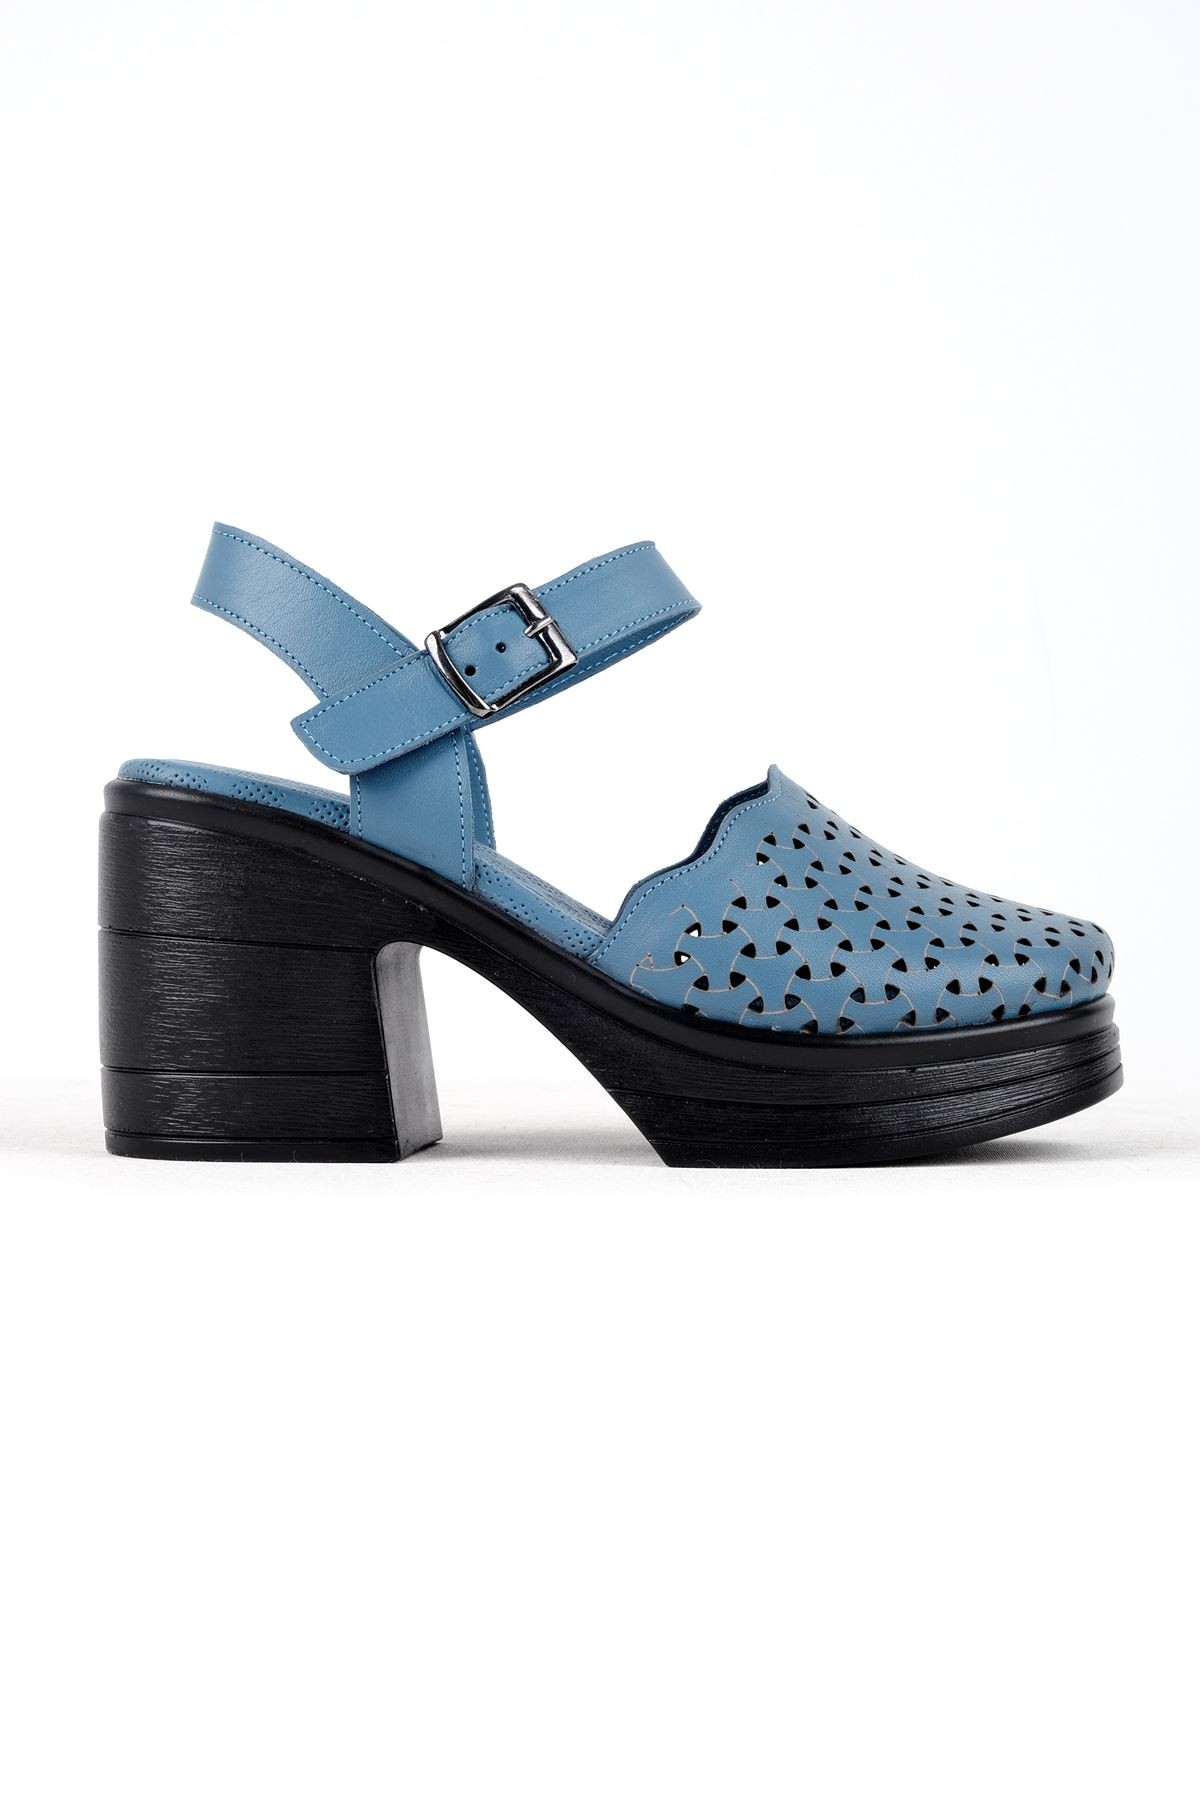 Kely Kadın Hakiki Deri Desenli Önü Kapalı Topuklu Sandalet (B3121) - Mavi